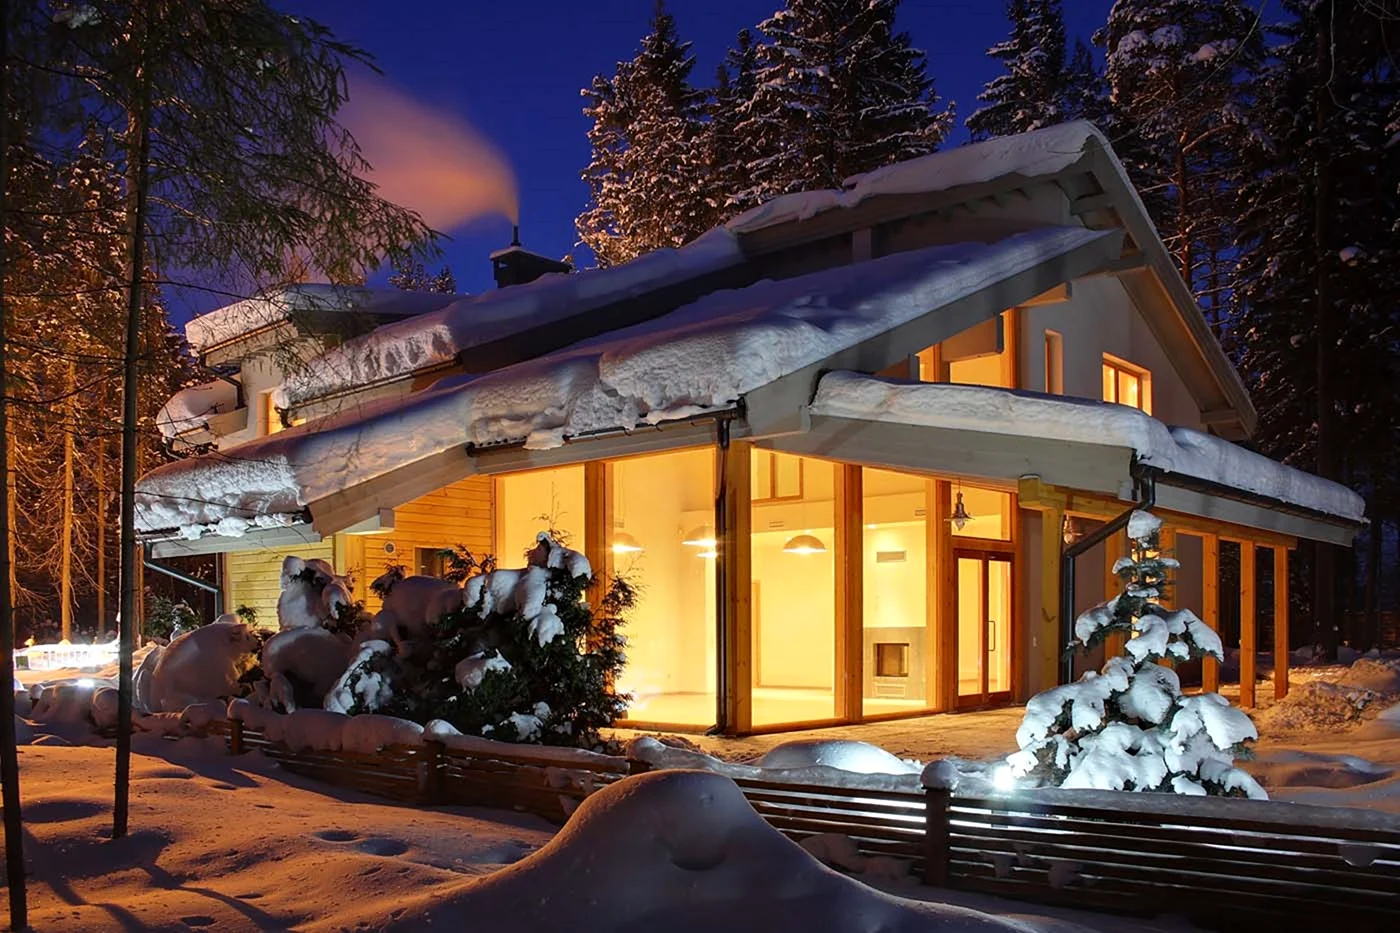 Отели для отдыха зимой в России — на Алтае, Байкале, в Карелии и других местах, где сейчас красиво